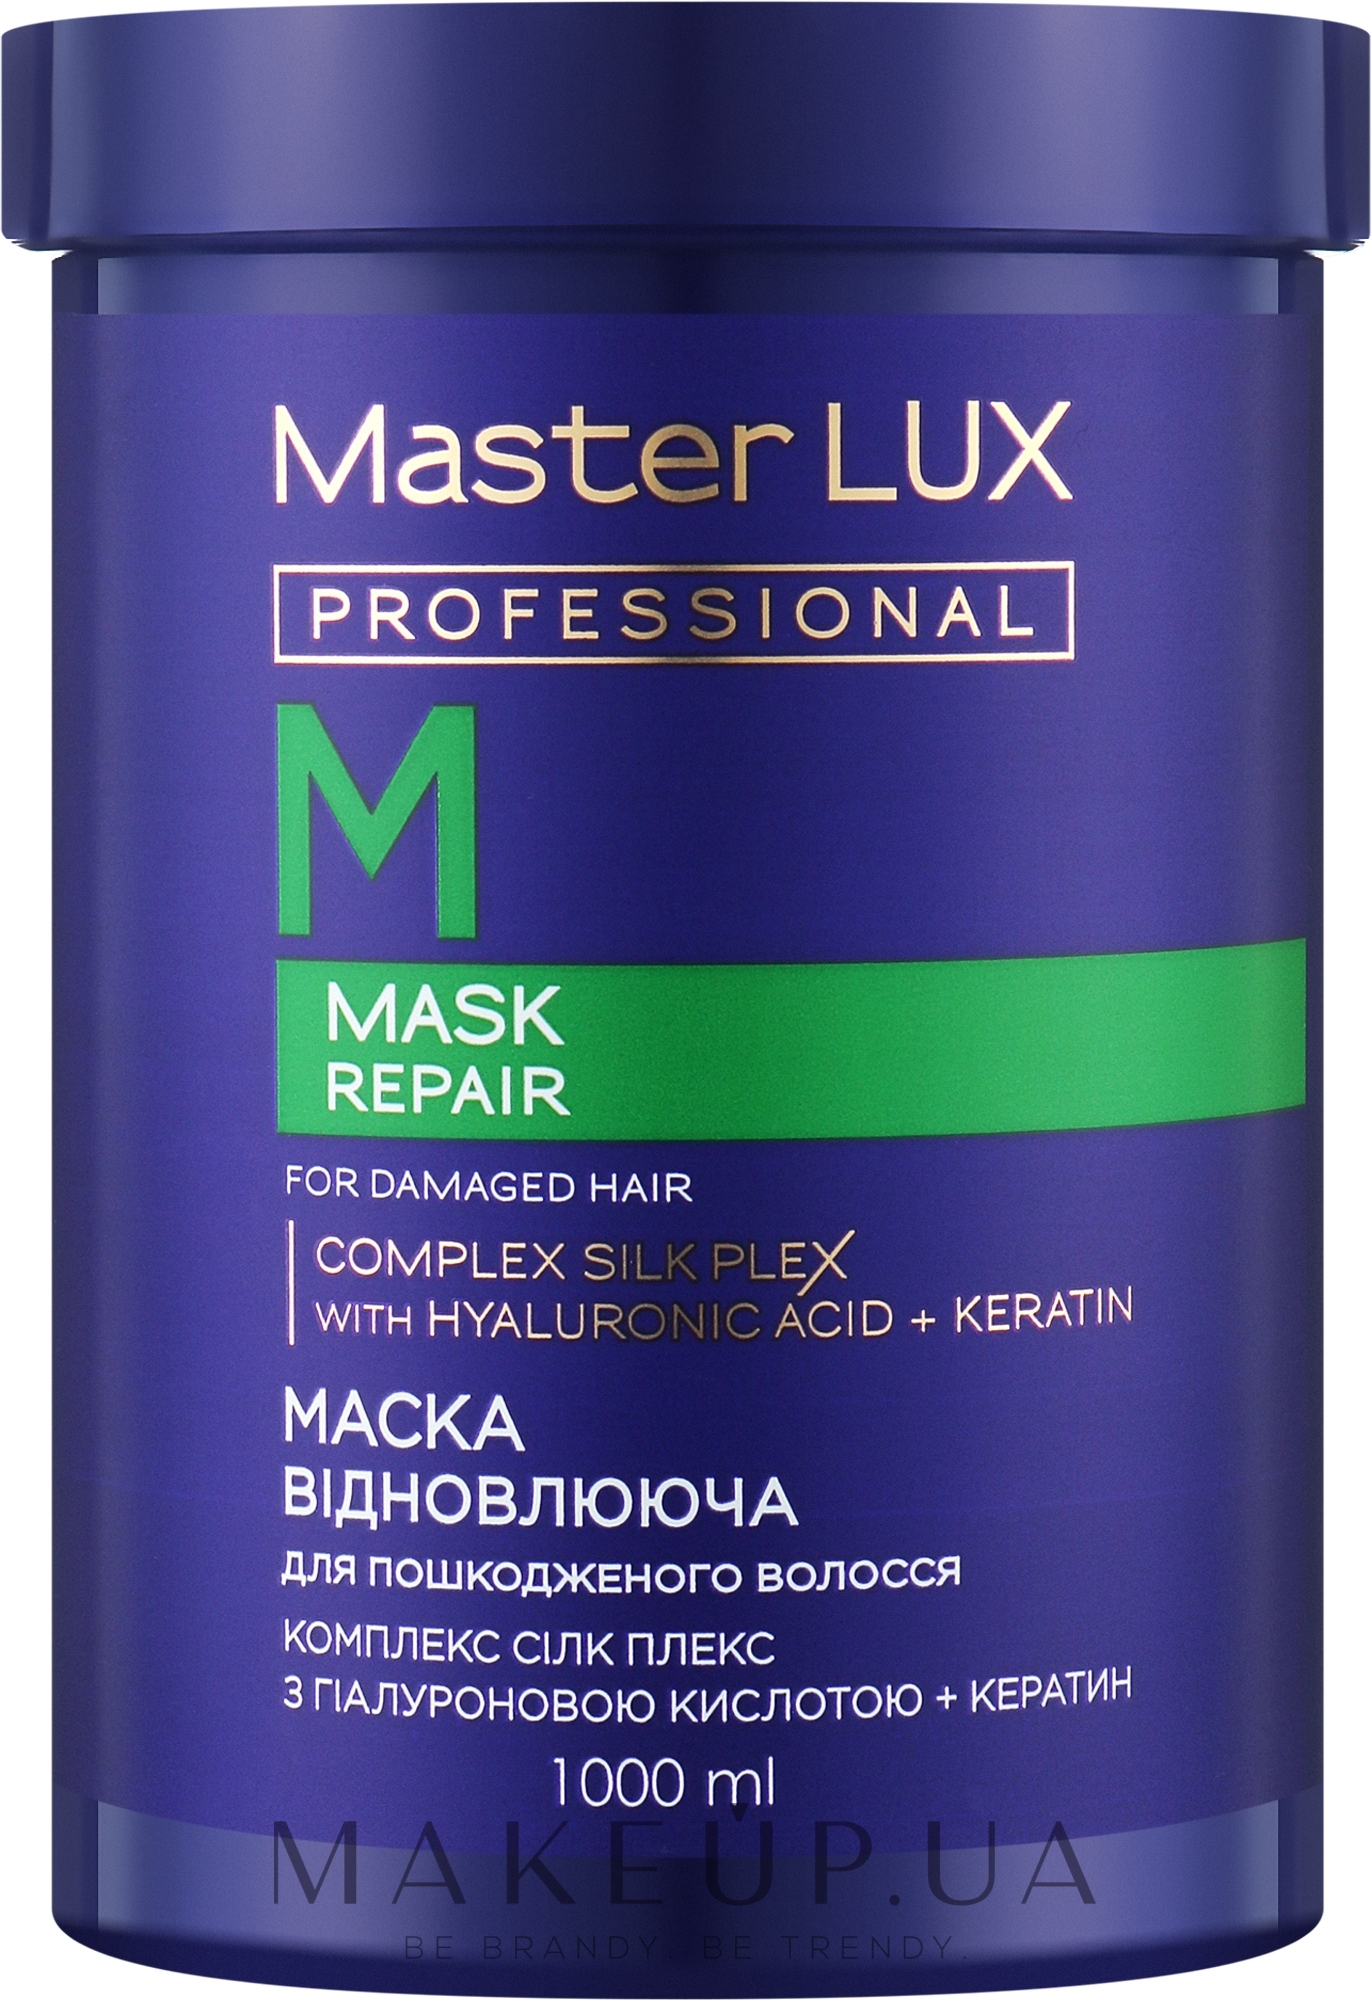 Маска для пошкодженого волосся "Відновлювальна" - Master LUX Professional Repair Mask — фото 1000ml